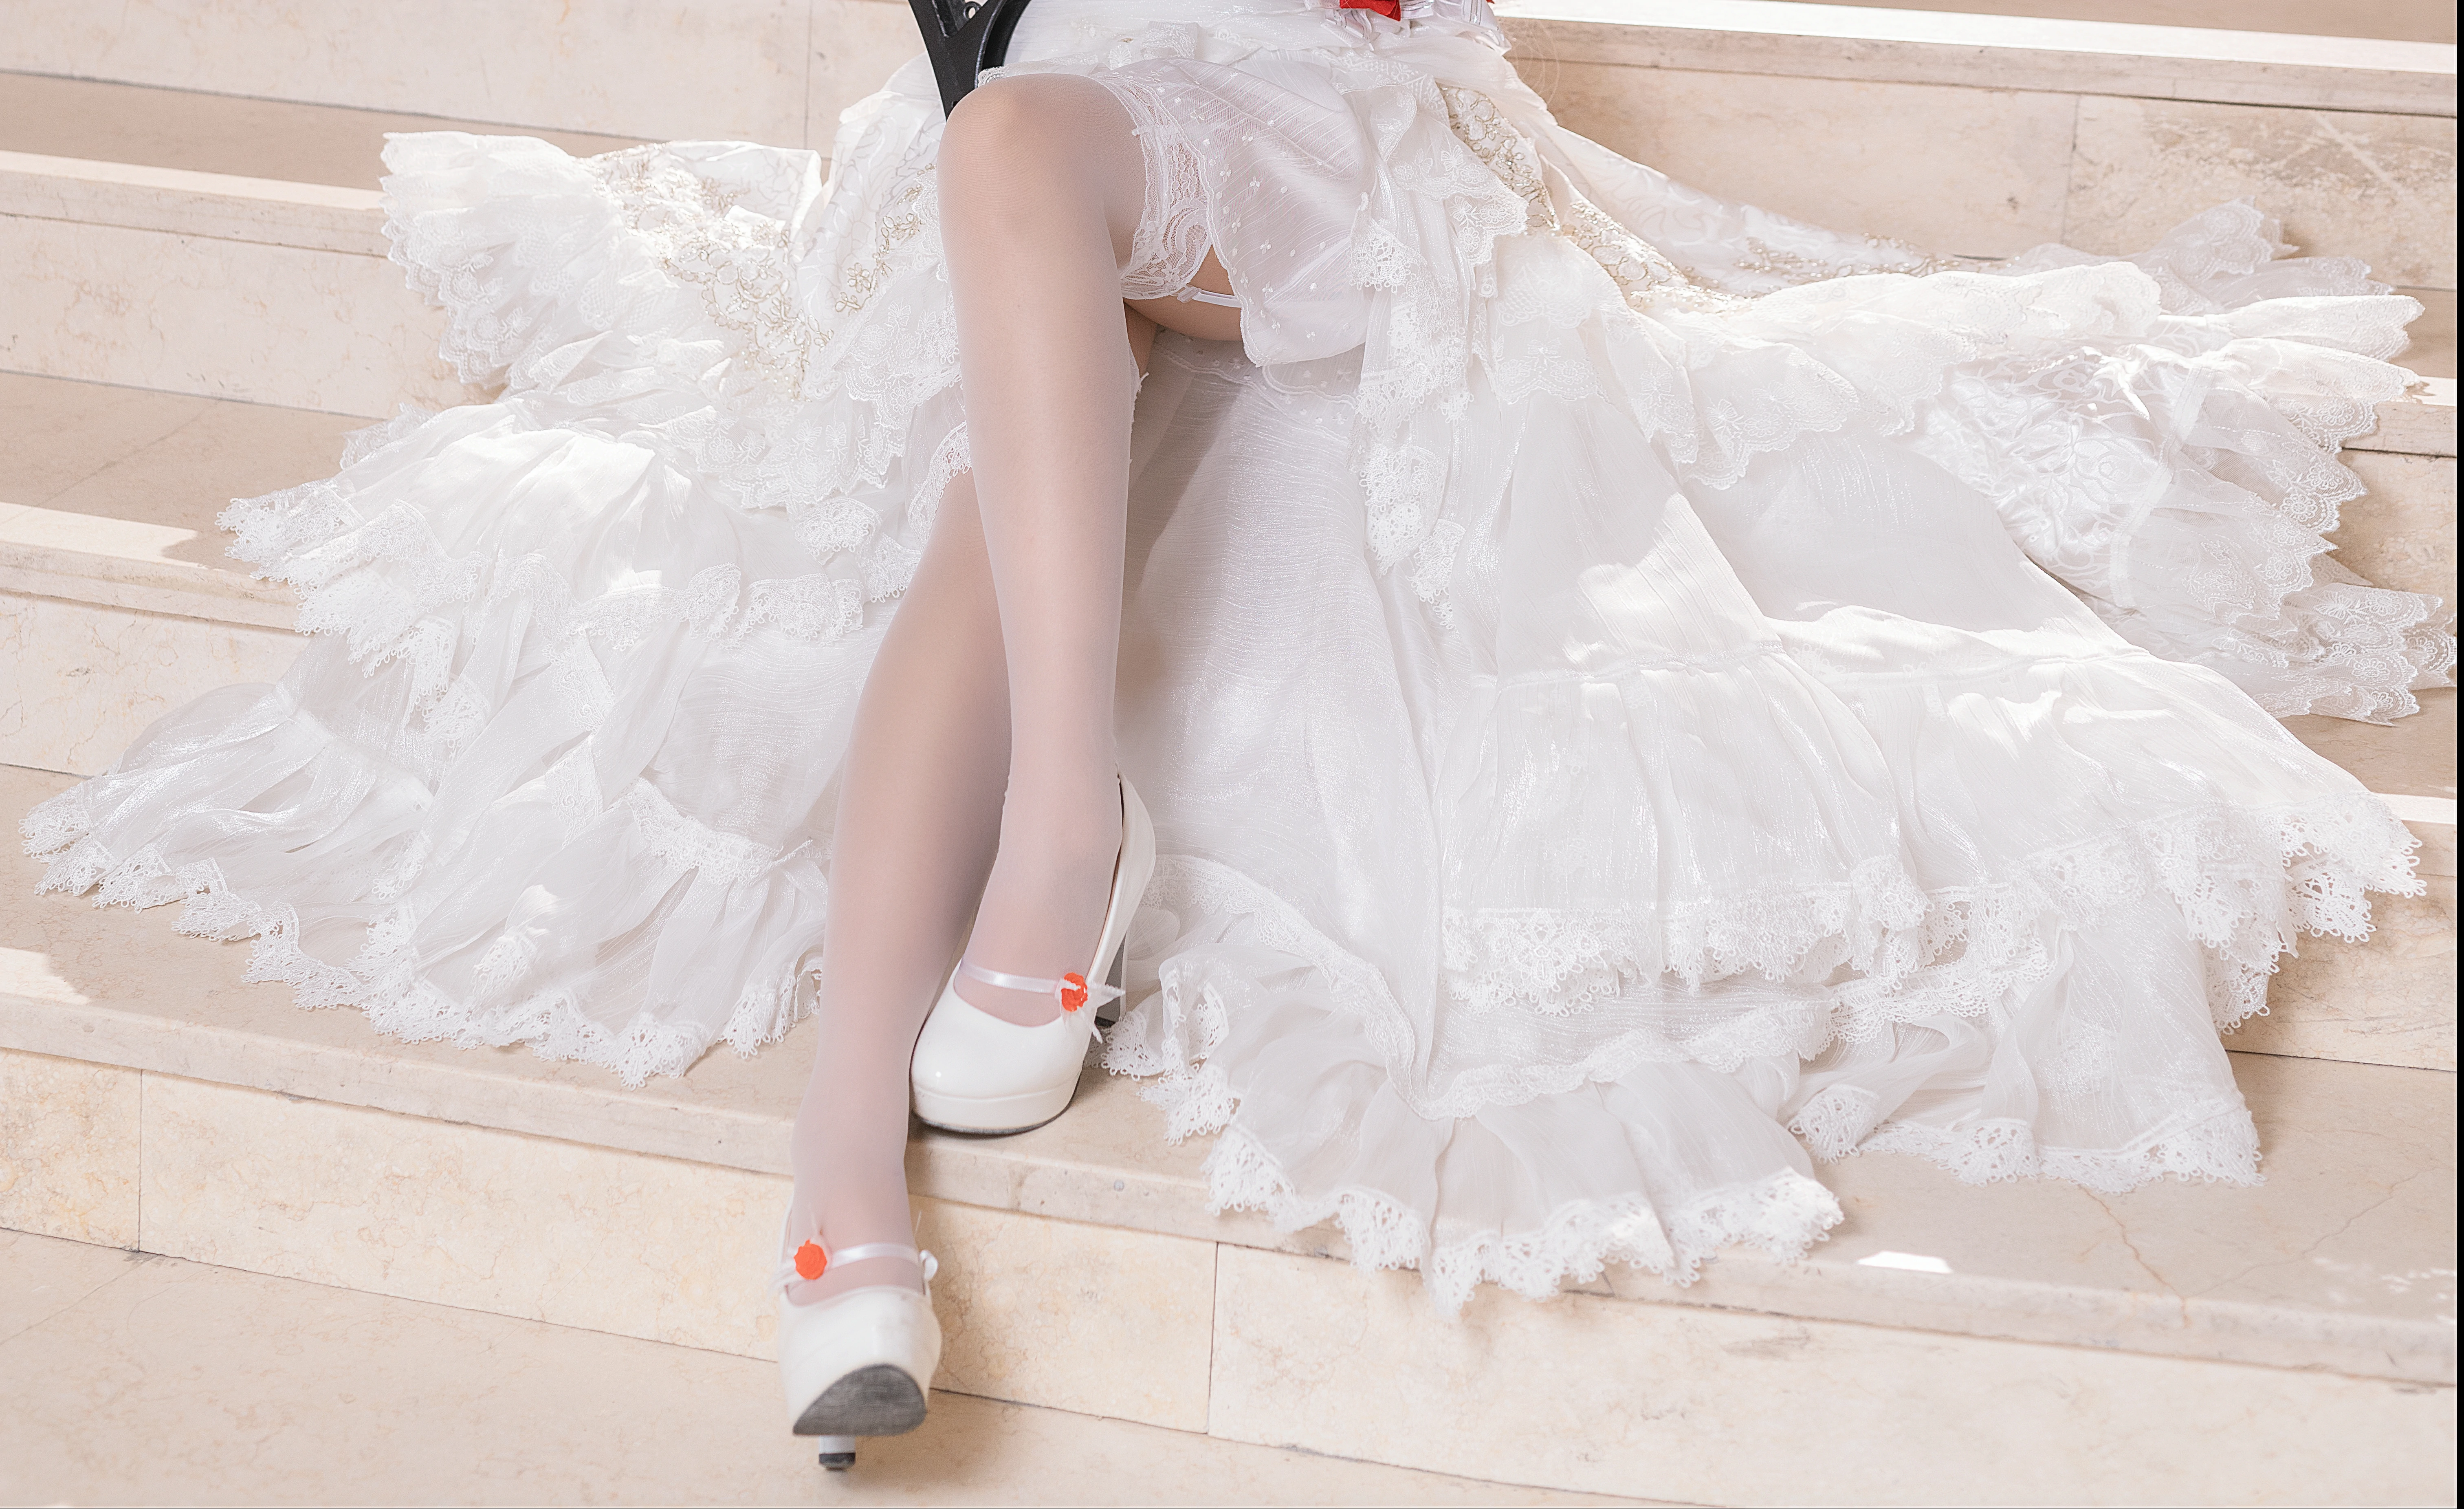 丰满花嫁少女 三度_69 白色抹胸婚纱加白色丝袜美腿性感私房写真,